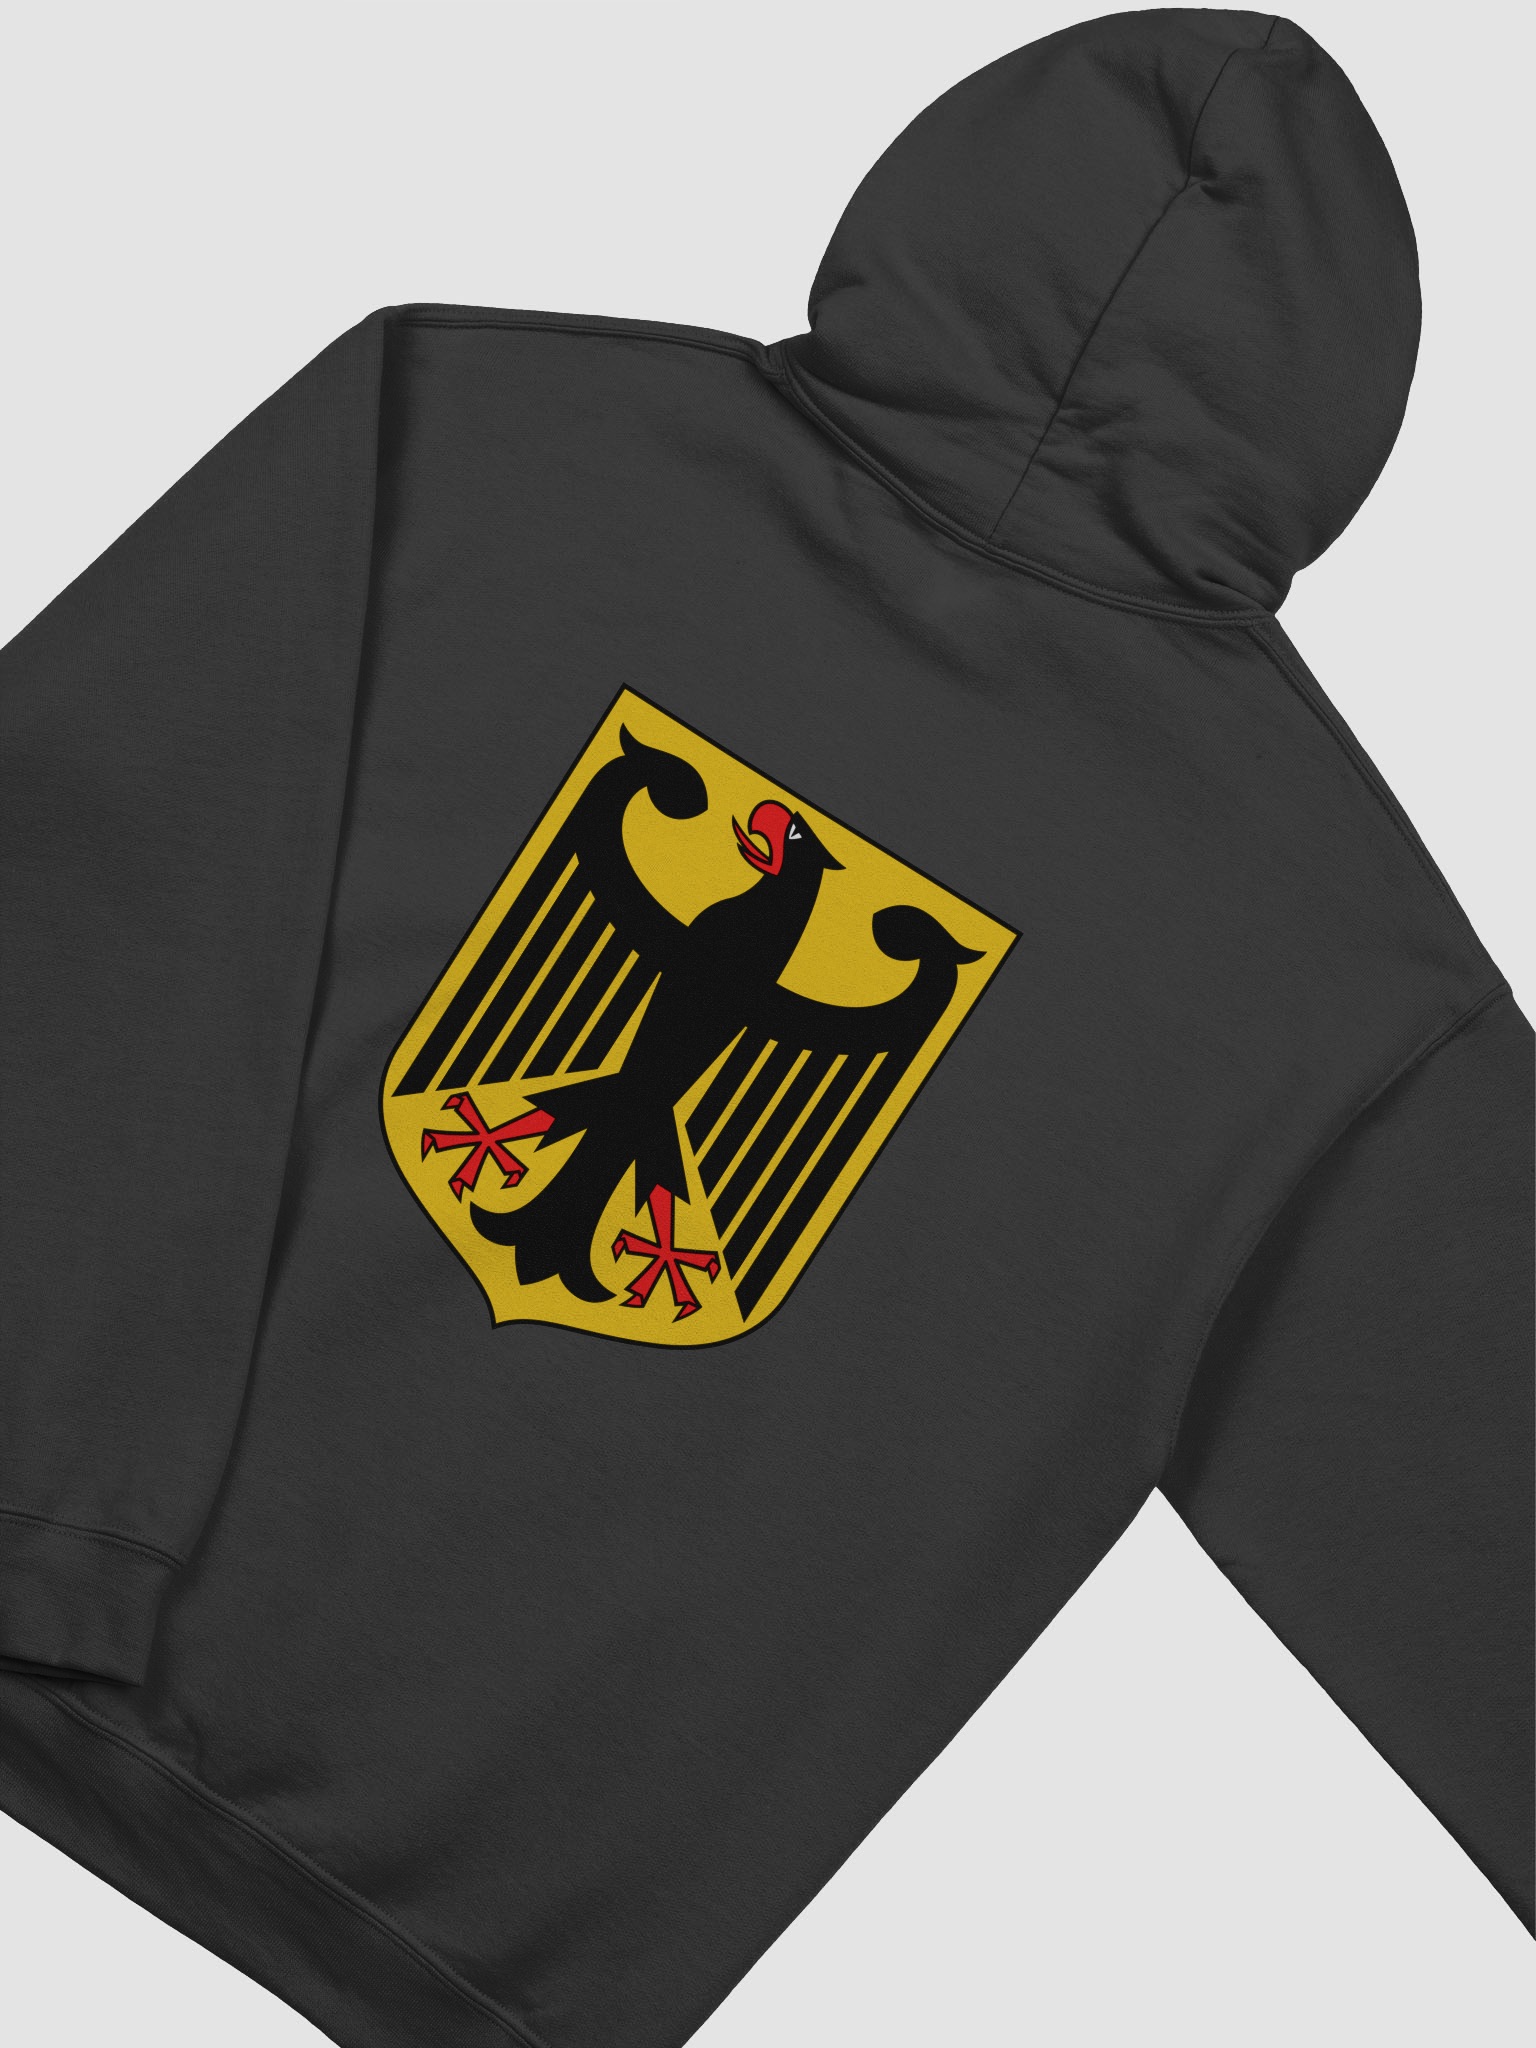 German Shop Coat Of | People\'s Hoodie Arms